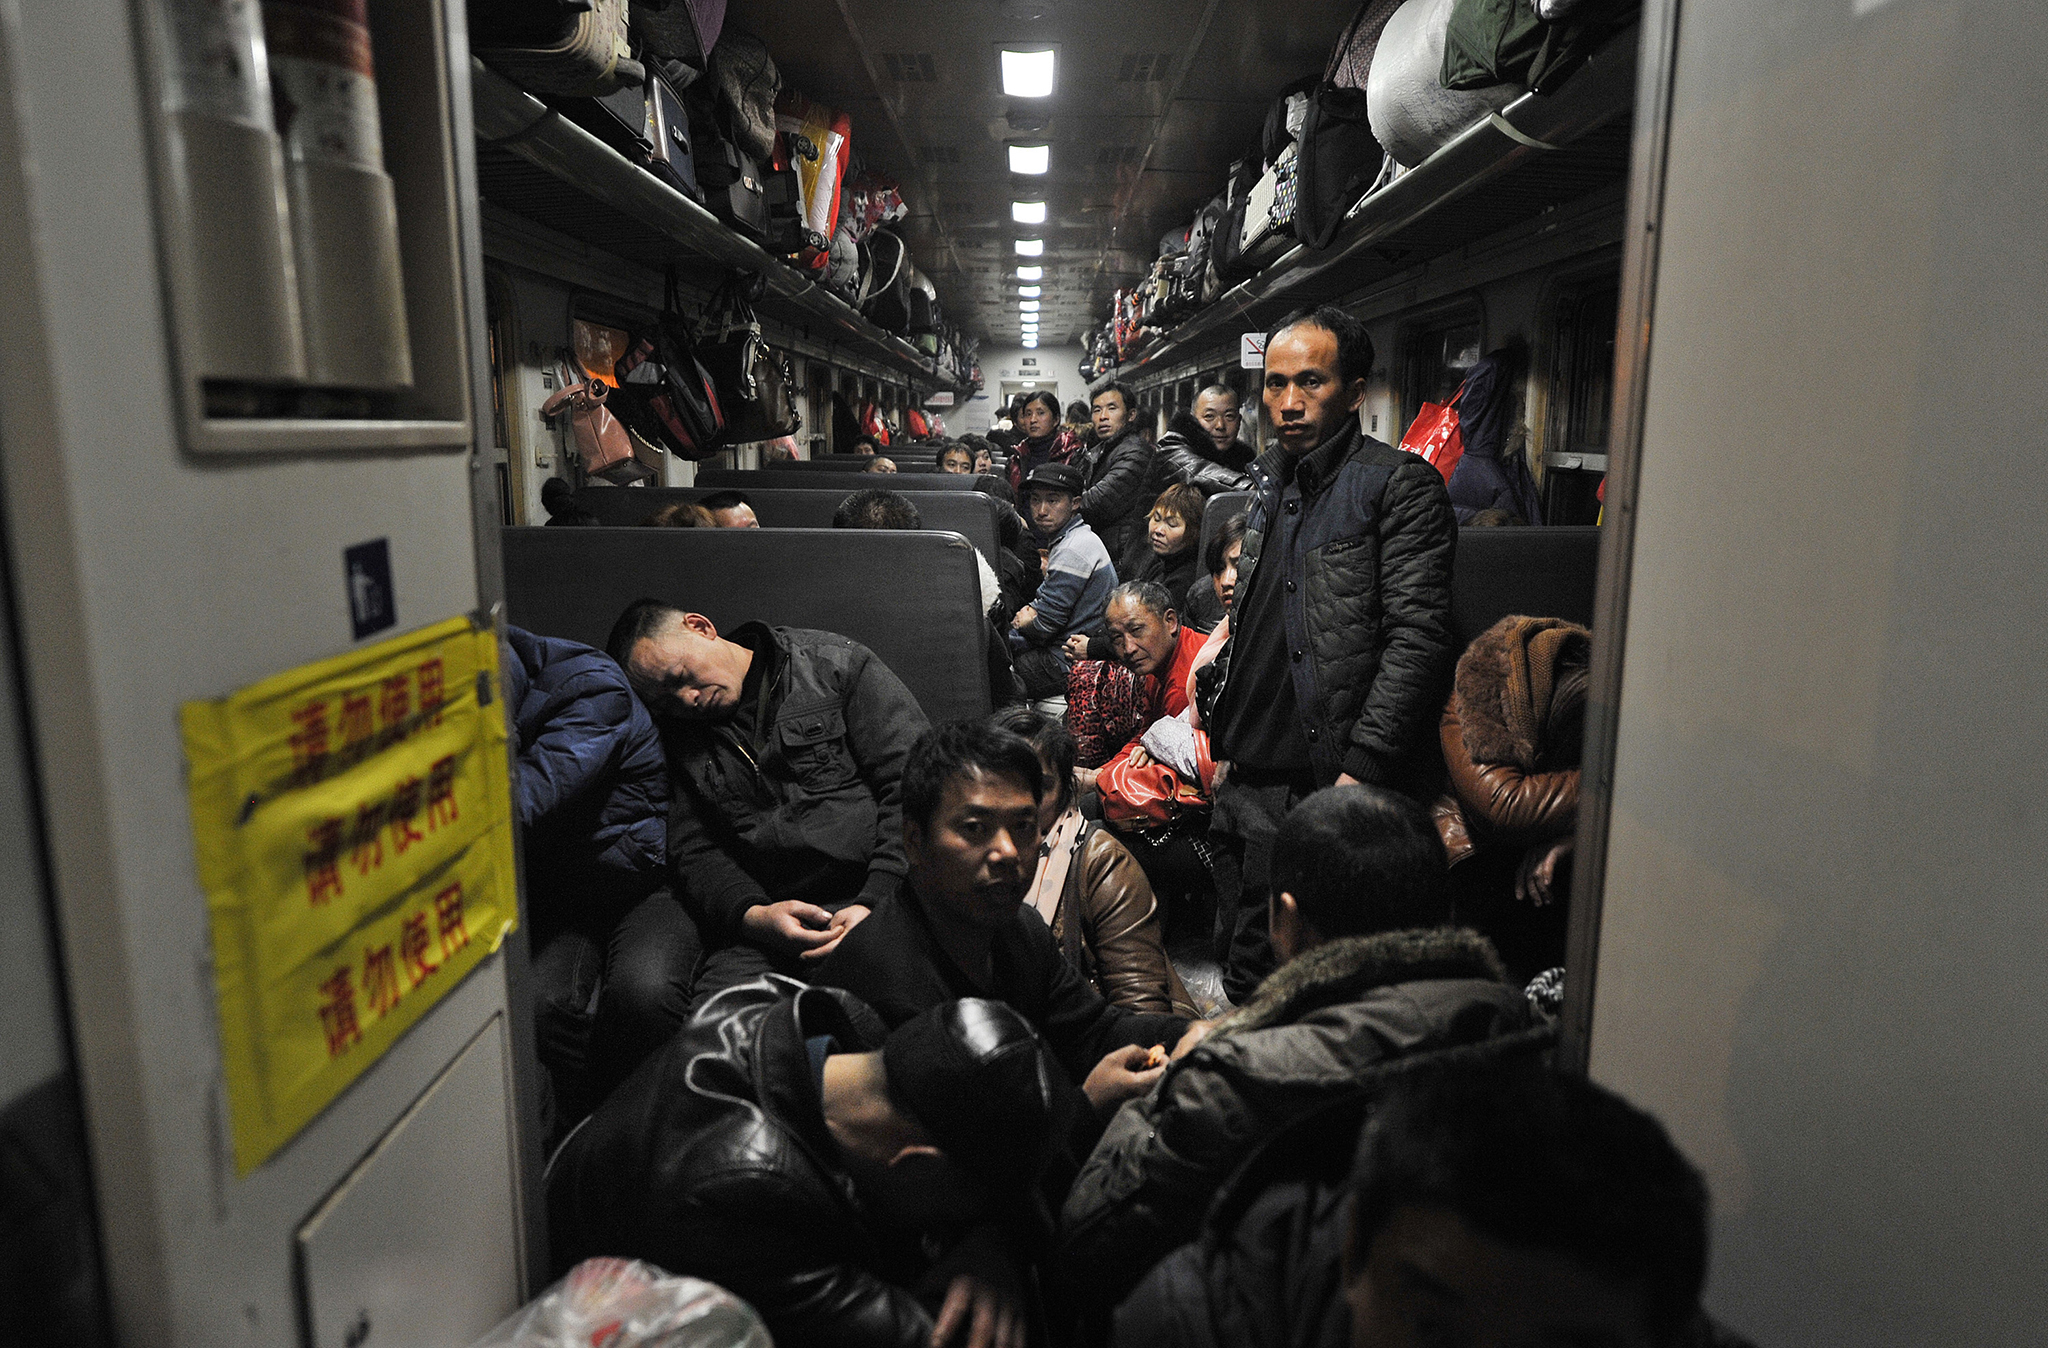 Milhões de chineses receosos no regresso a casa após fim de restrições